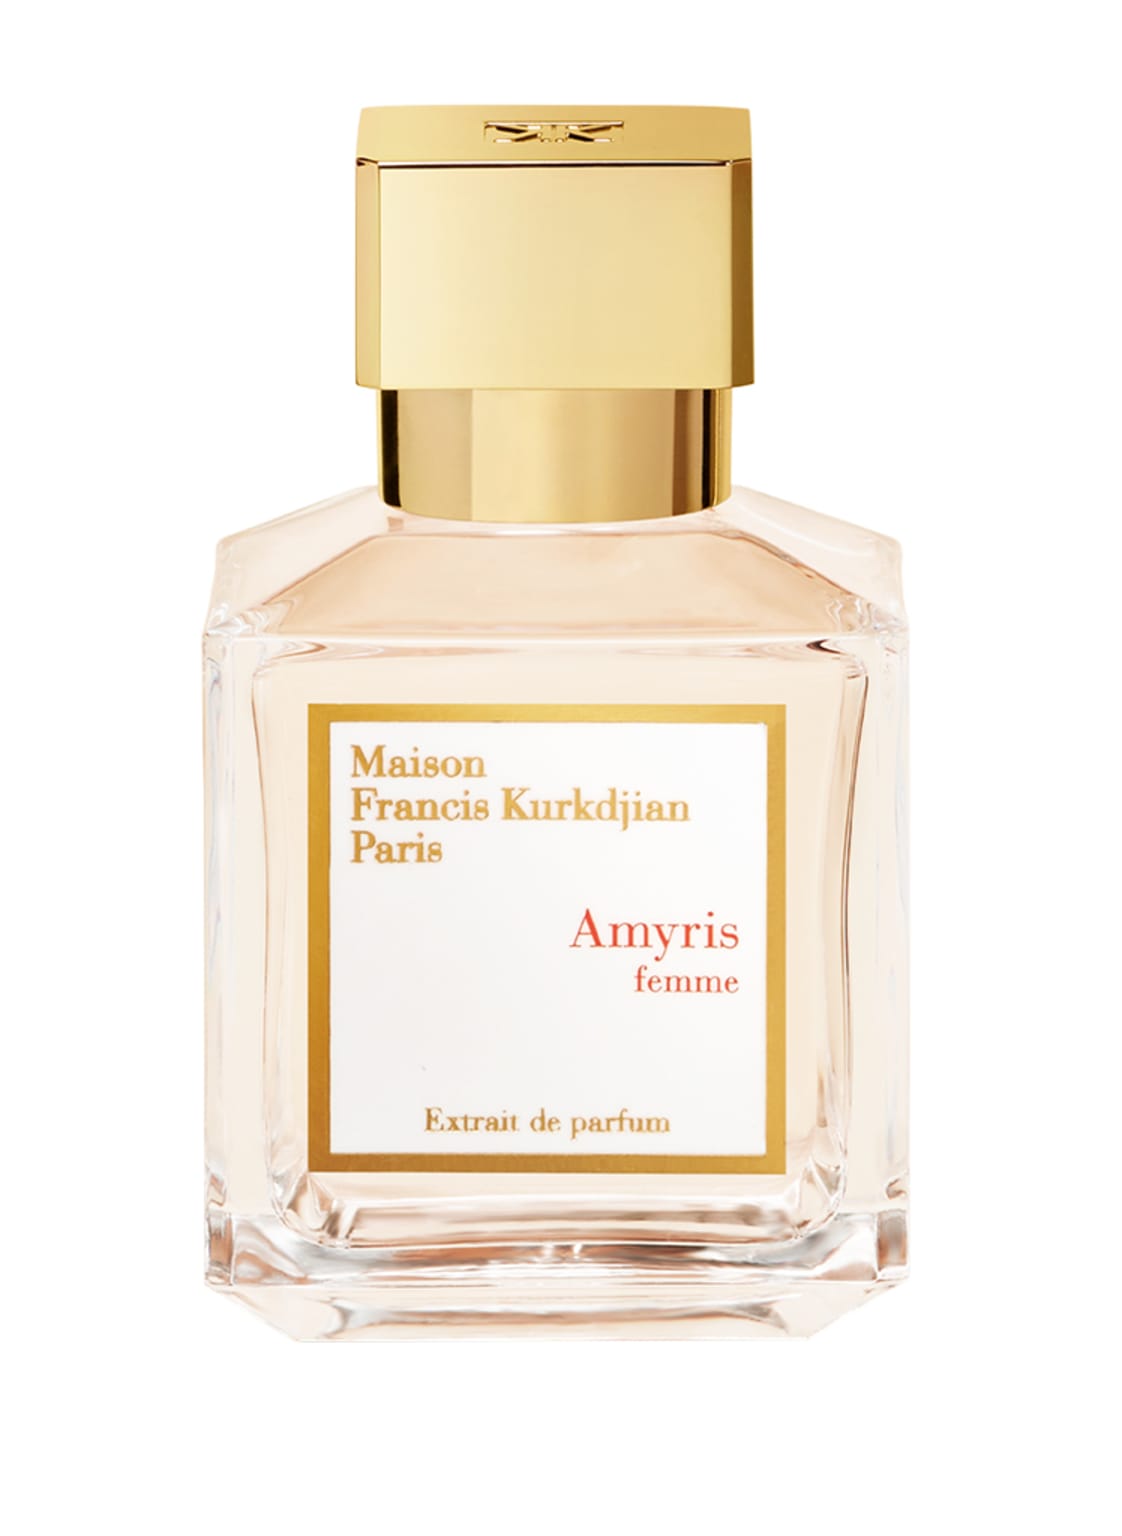 Image of Maison Francis Kurkdjian Paris Amyris Femme Extrait de Parfum 70 ml